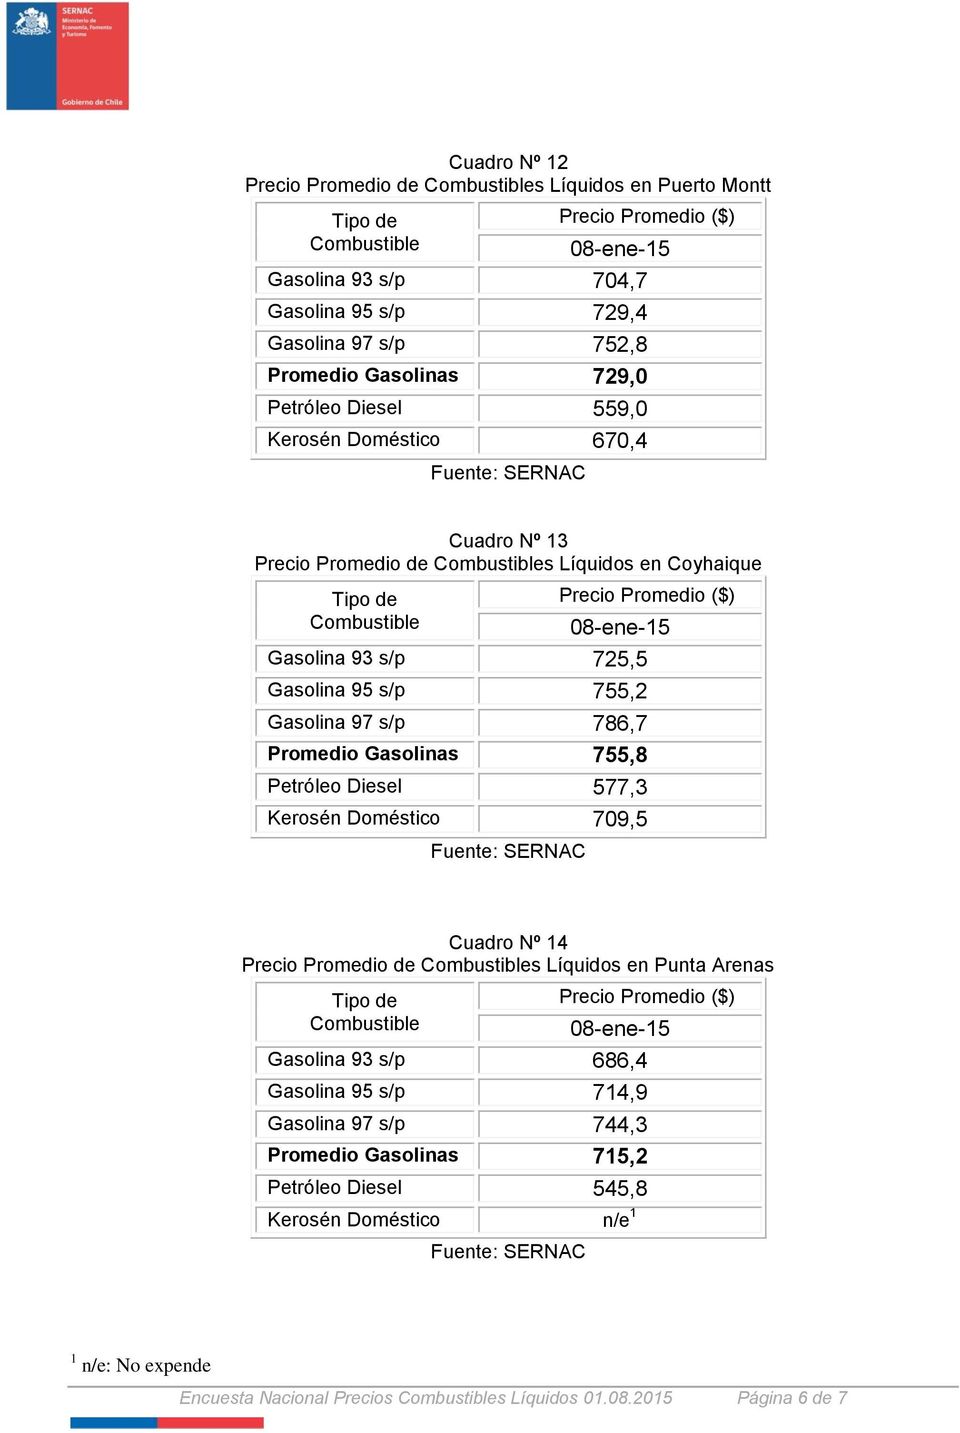 Promedio Gasolinas 755,8 Petróleo Diesel 577,3 Kerosén Doméstico 709,5 Cuadro Nº 14 Precio Promedio de s Líquidos en Punta Arenas Gasolina 93 s/p 686,4 Gasolina